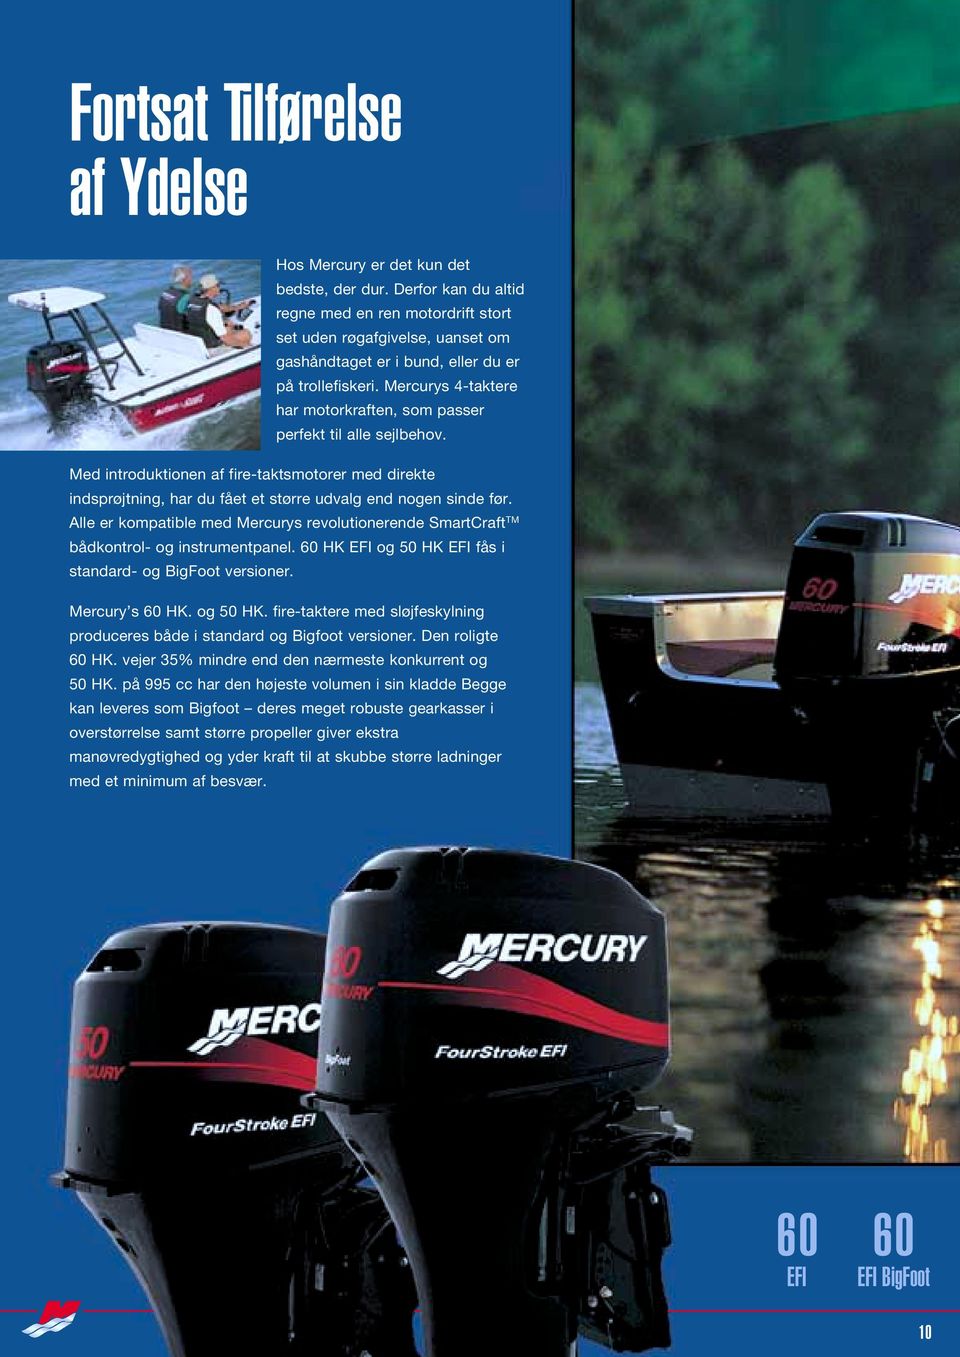 Mercurys 4-taktere har motorkraften, som passer perfekt til alle sejlbehov. Med introduktionen af fire-taktsmotorer med direkte indsprøjtning, har du fået et større udvalg end nogen sinde før.